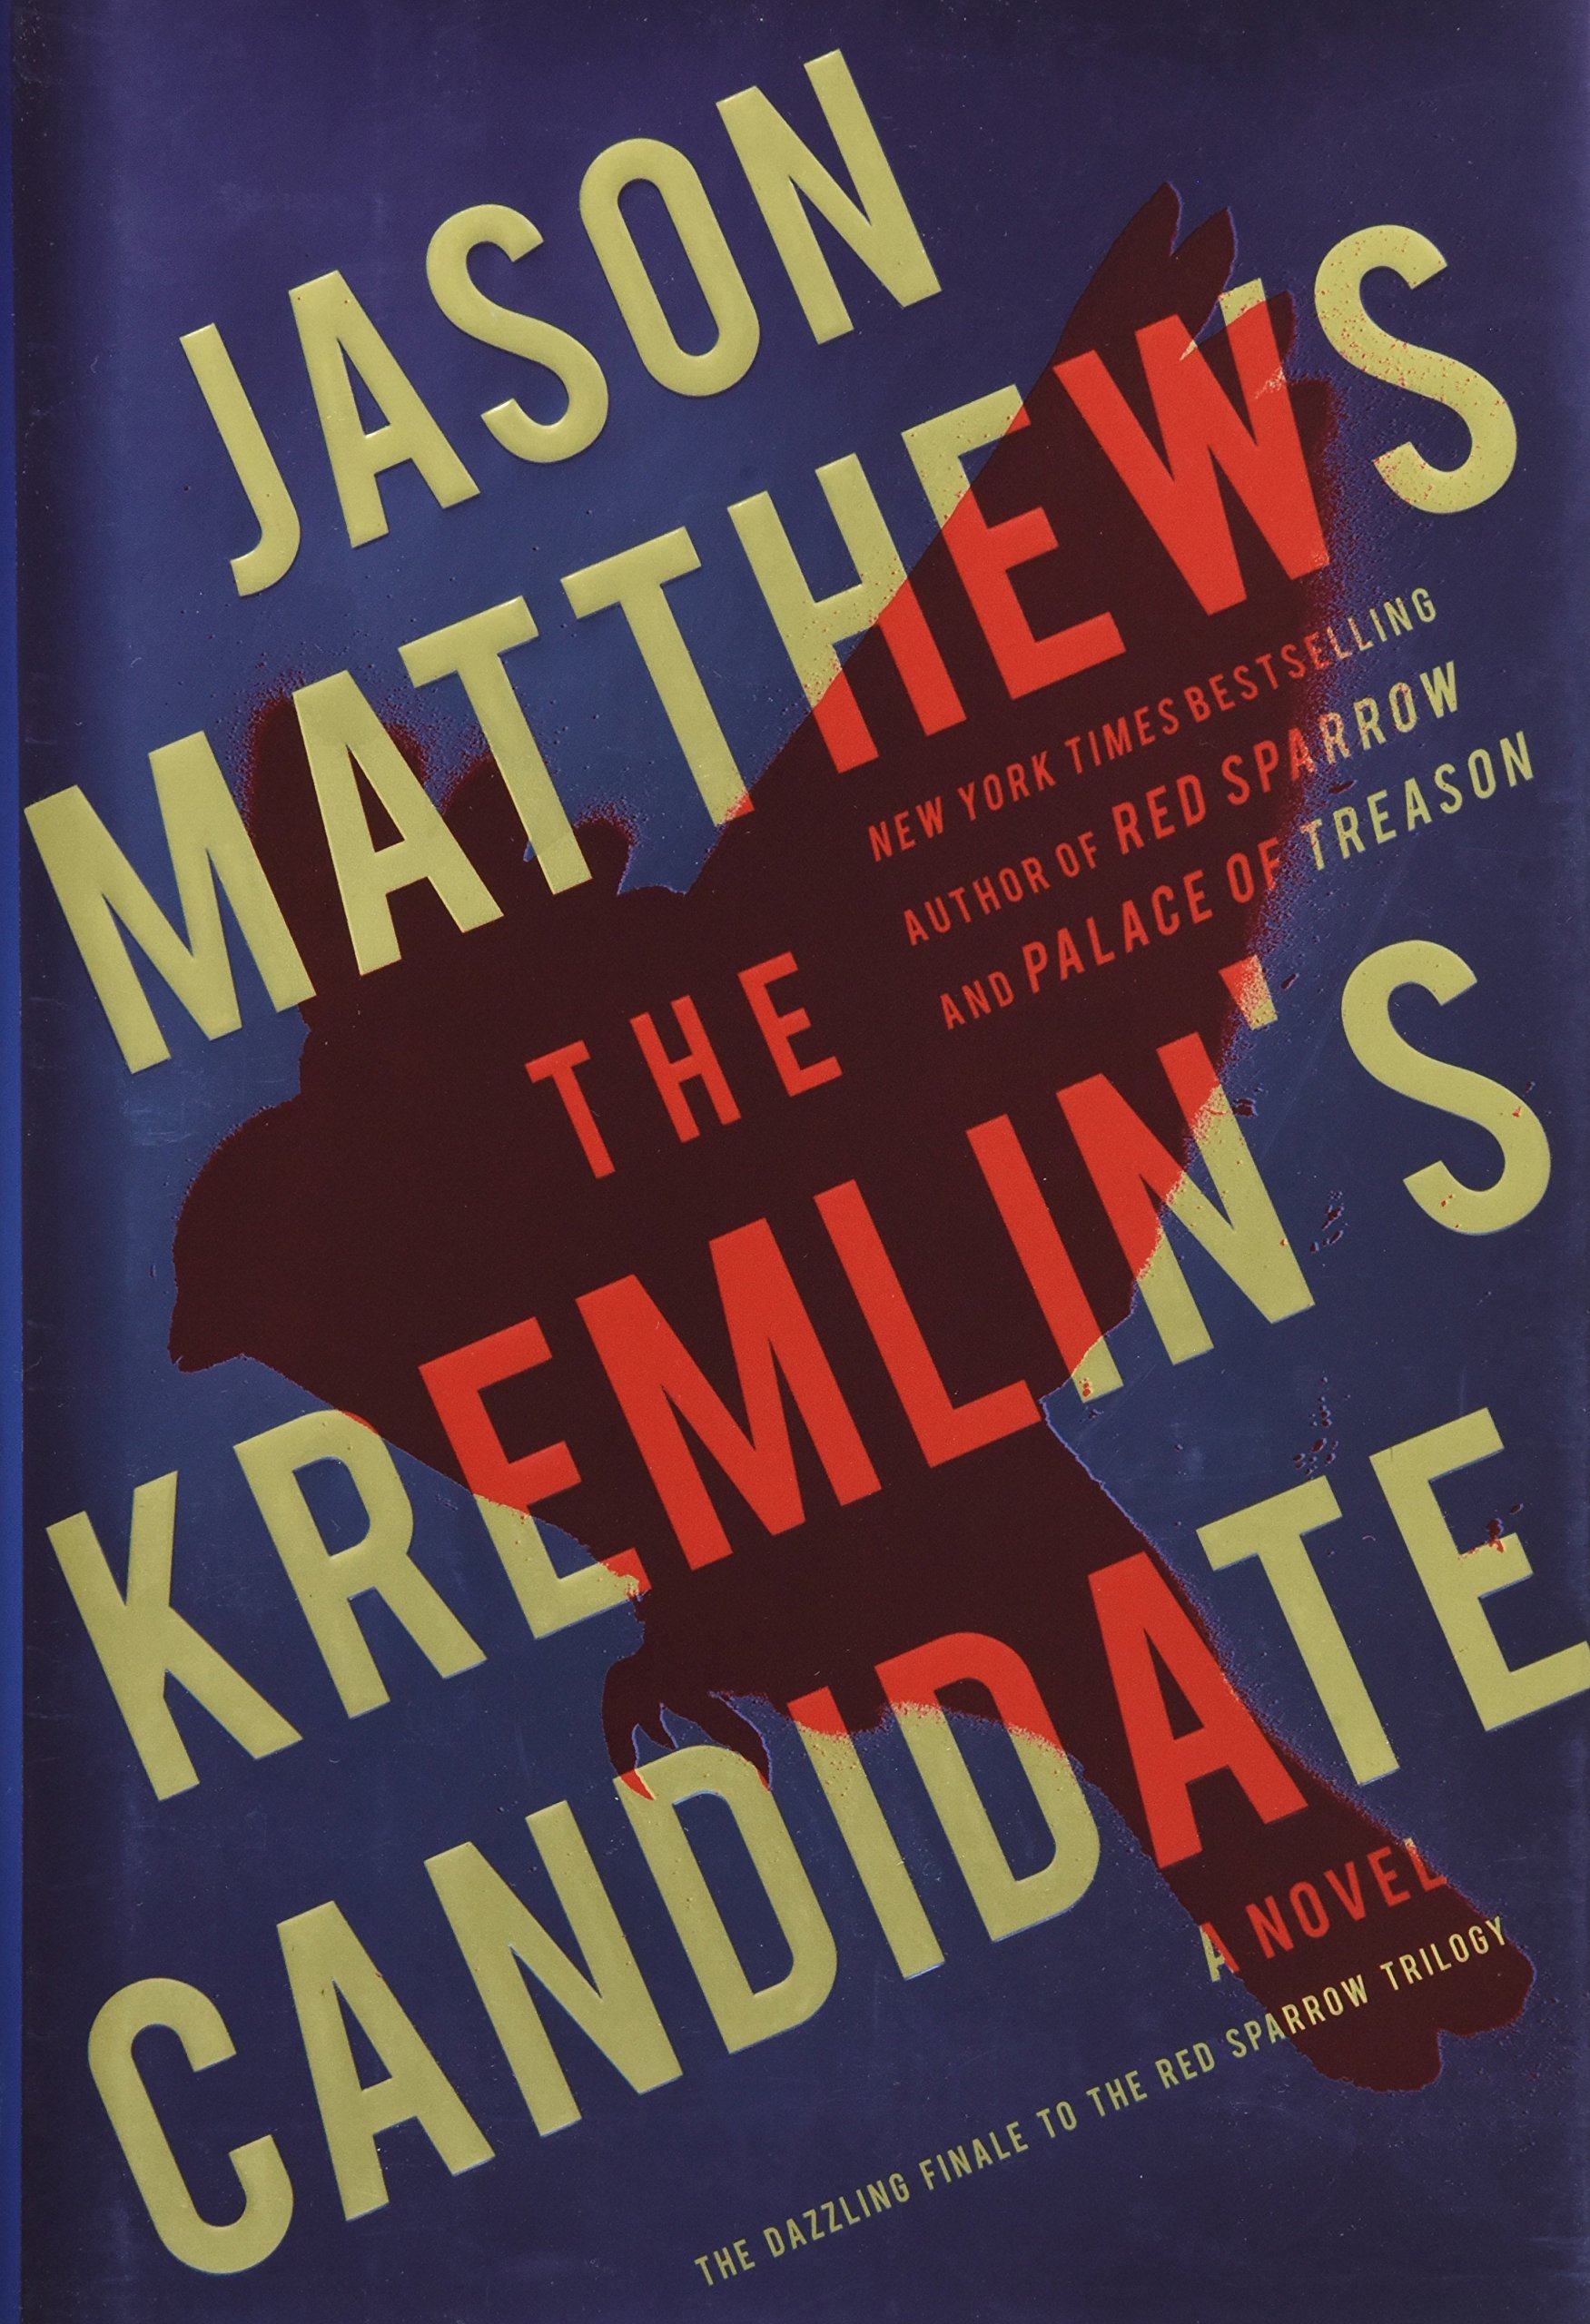 The Kremlin's Candidate: A Novel